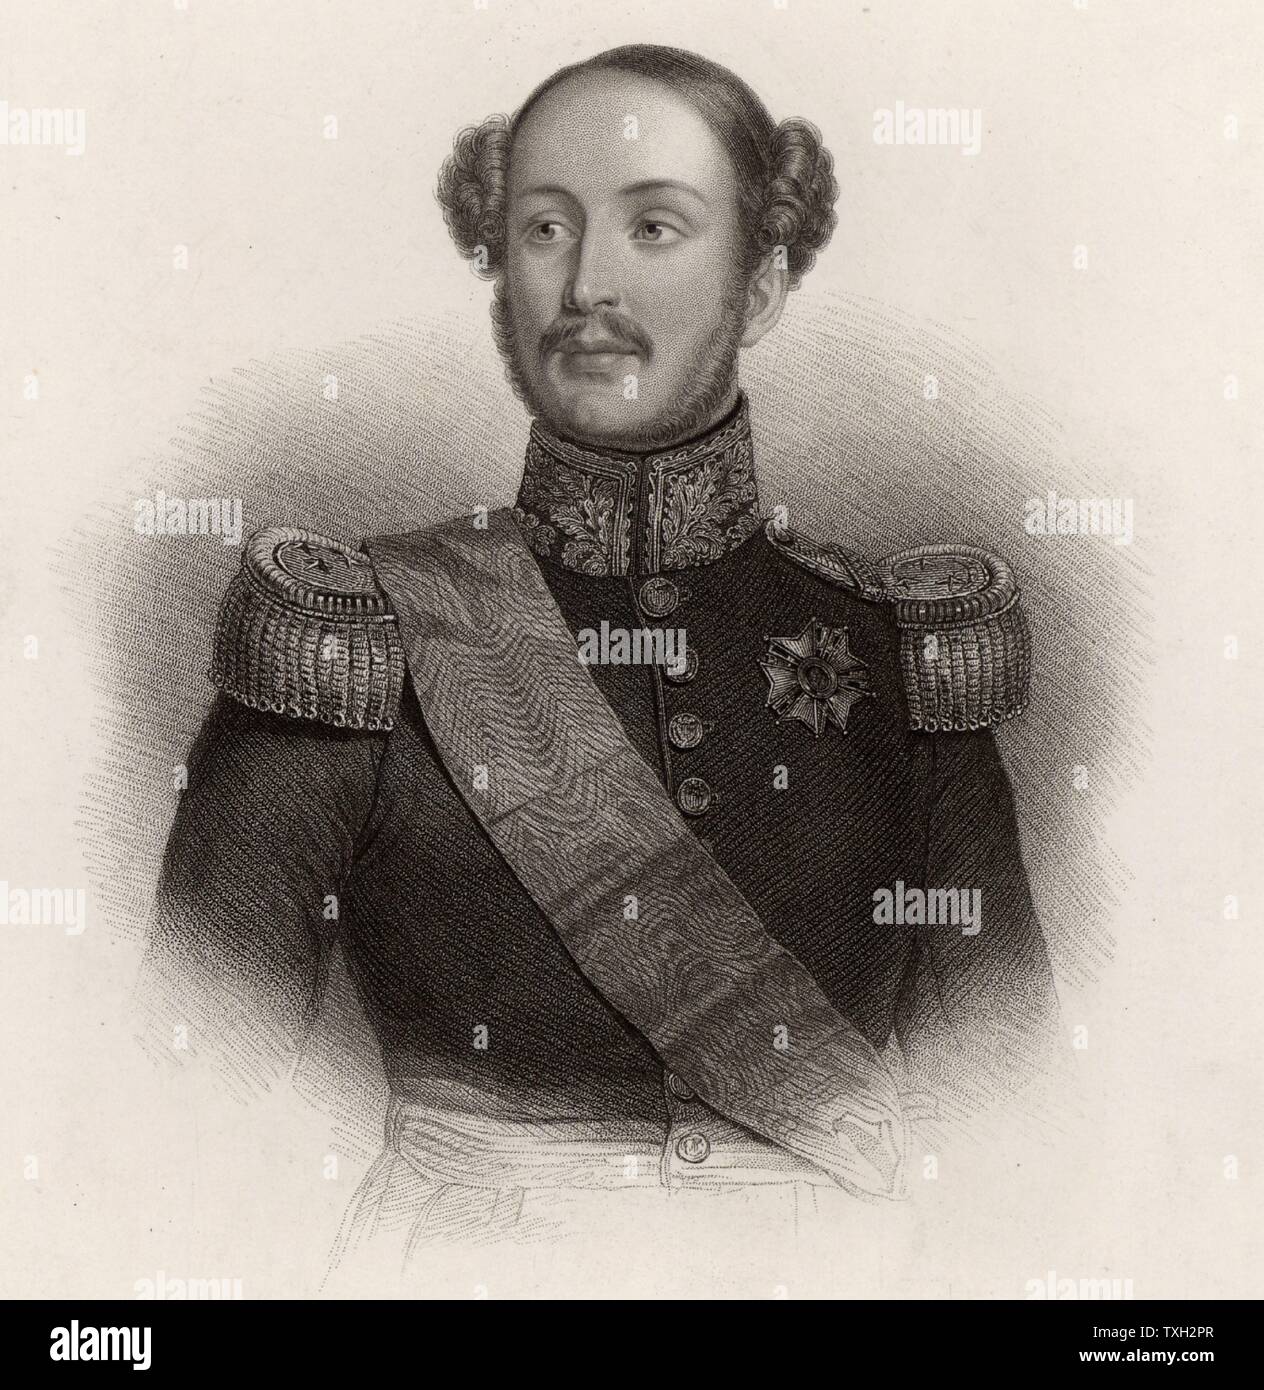 Ferdinand Philippe, Duc d'Orléans (1810-42) ältester Sohn des französischen Königs Louis Philippe. Erbe des Thrones von Frankreich, diente er als General der französischen Armee. In einer Kutsche Unfall getötet. Gravur. Stockfoto